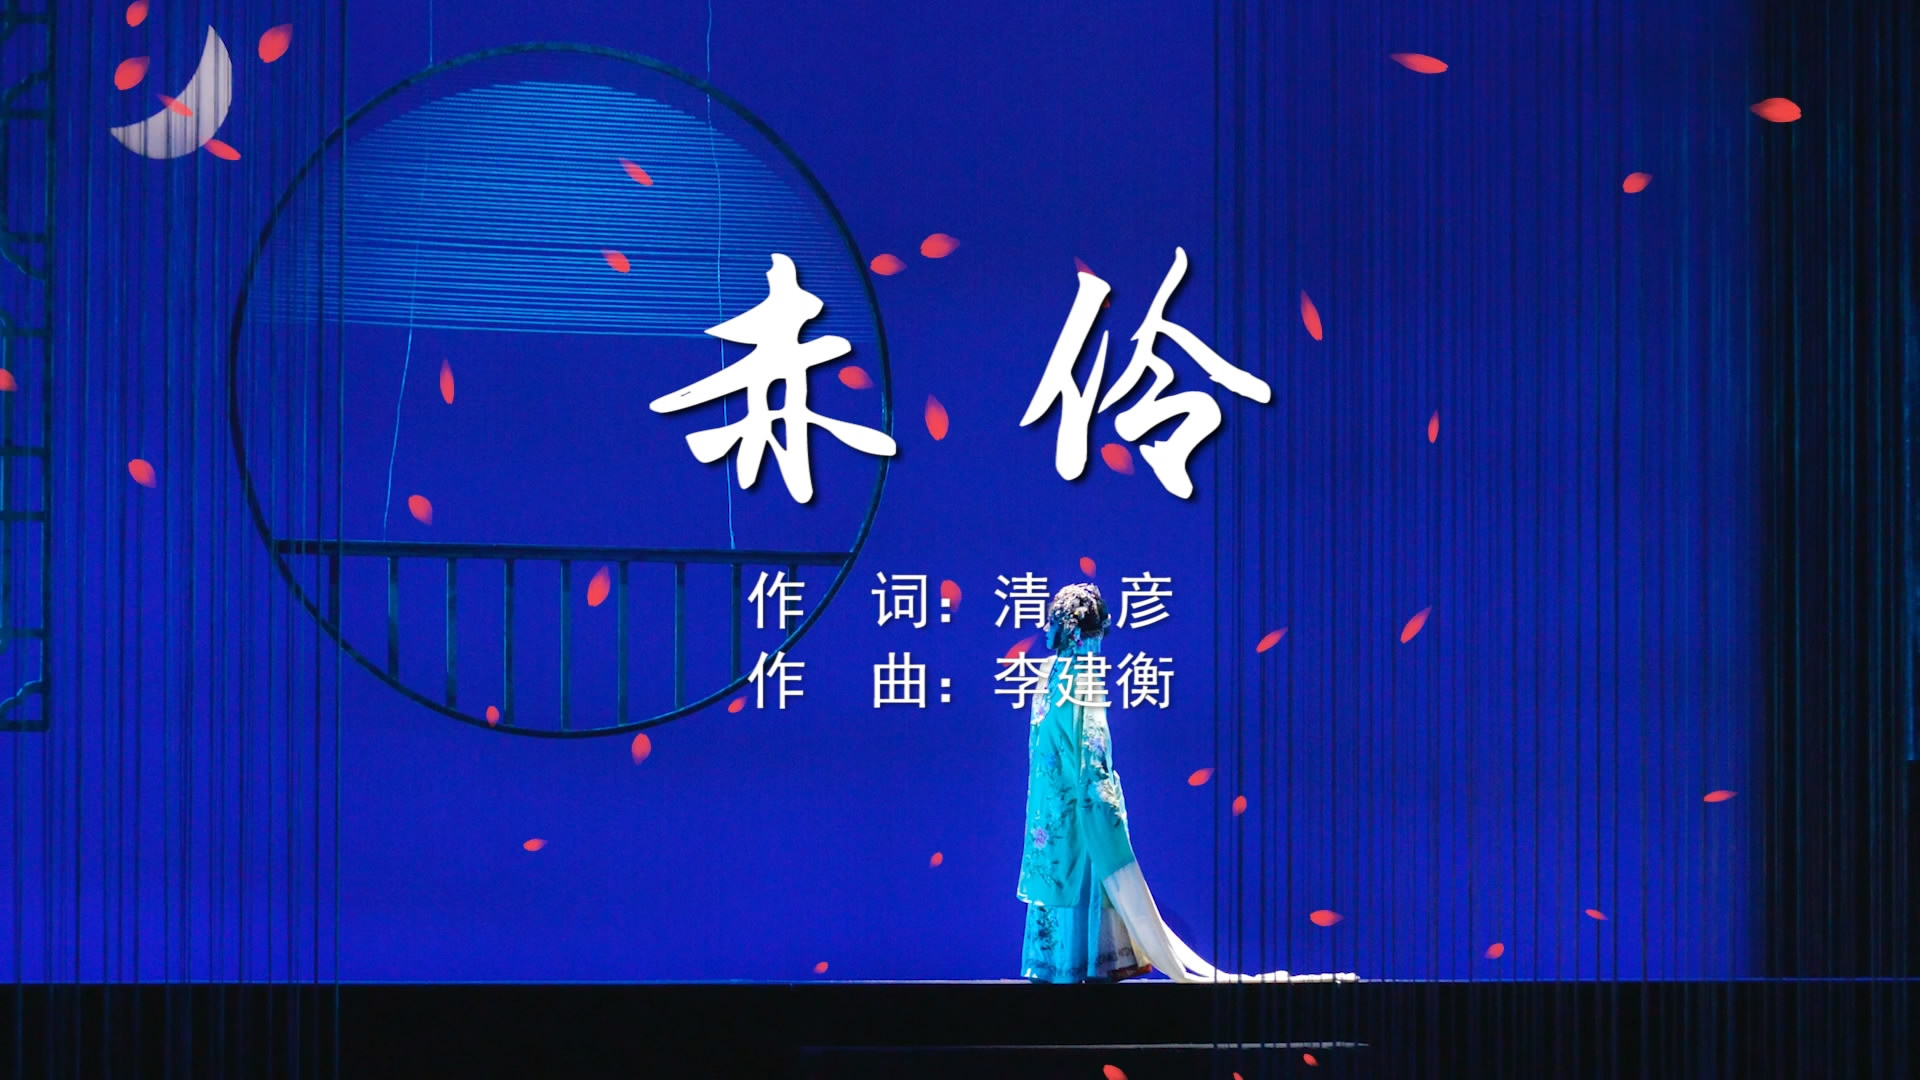 赤伶 HITAMV字幕配乐伴奏舞台演出LED背景大屏幕视频素材TV